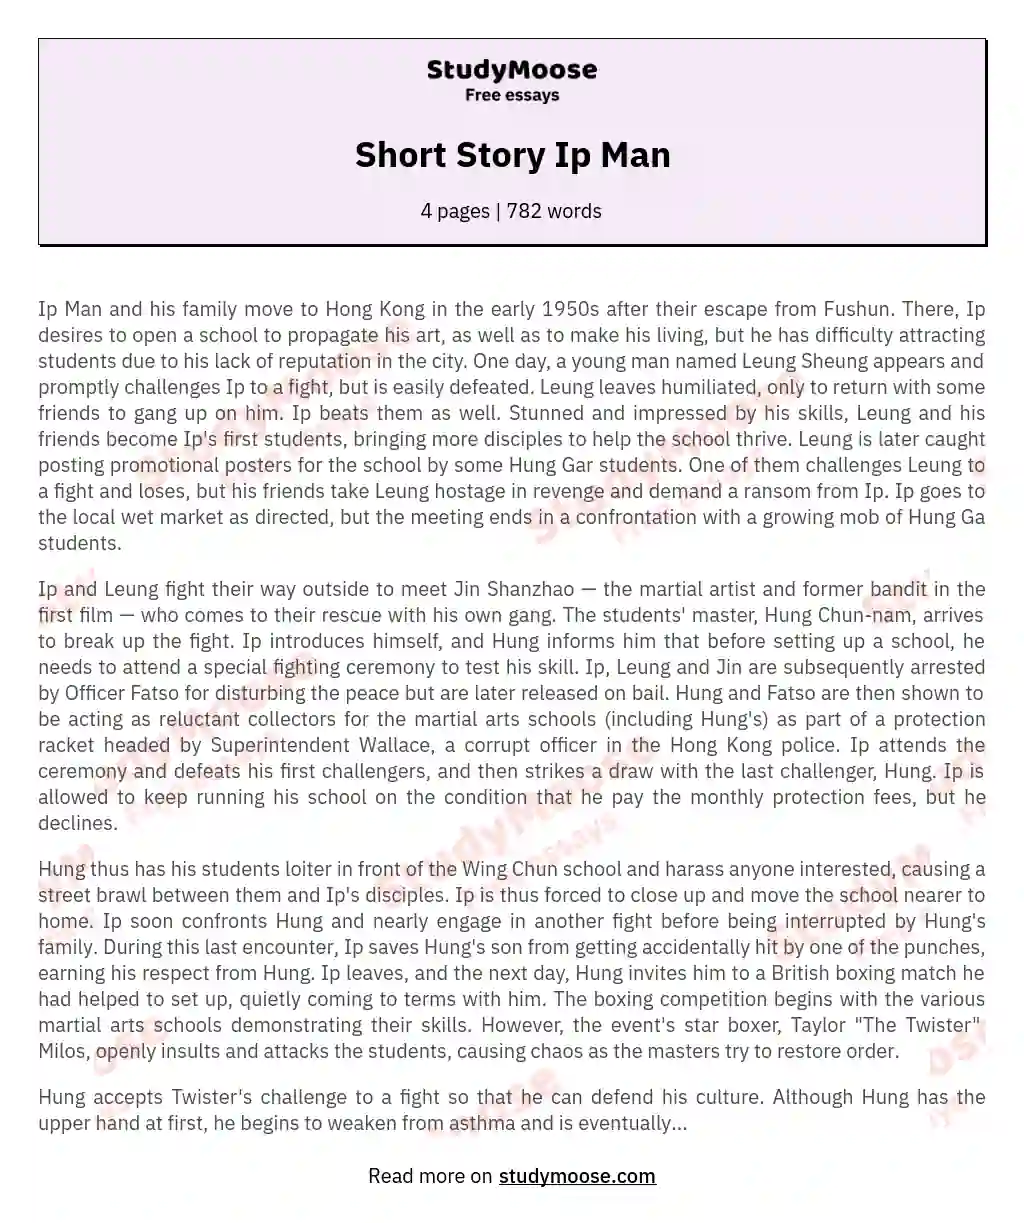 Short Story Ip Man essay